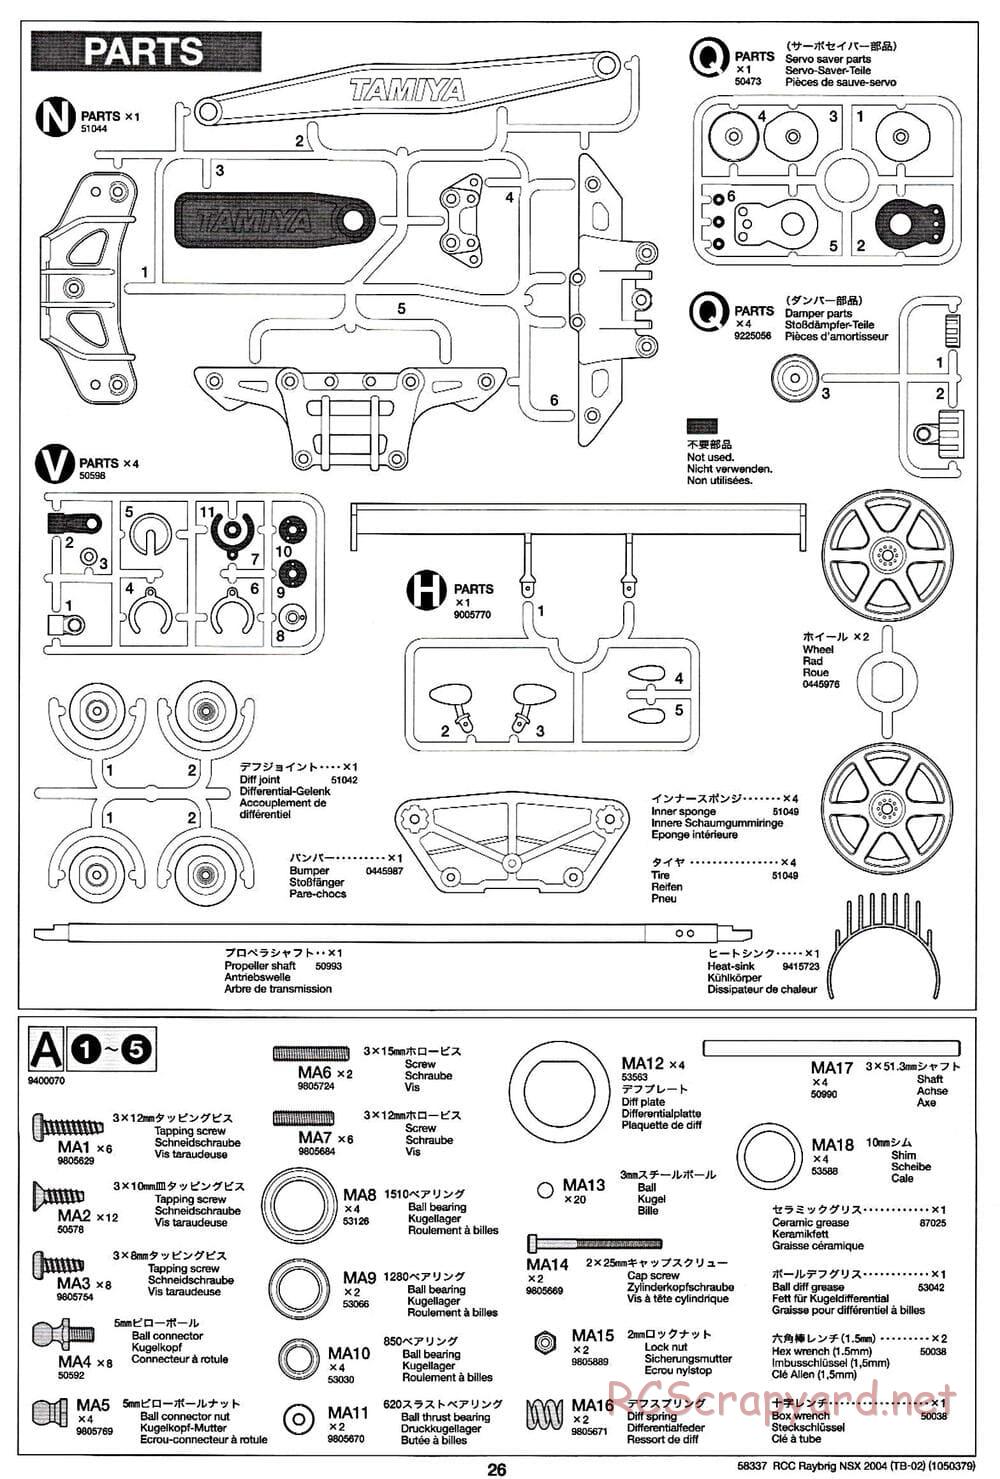 Tamiya - Raybrig NSX 2004 - TB-02 Chassis - Manual - Page 26